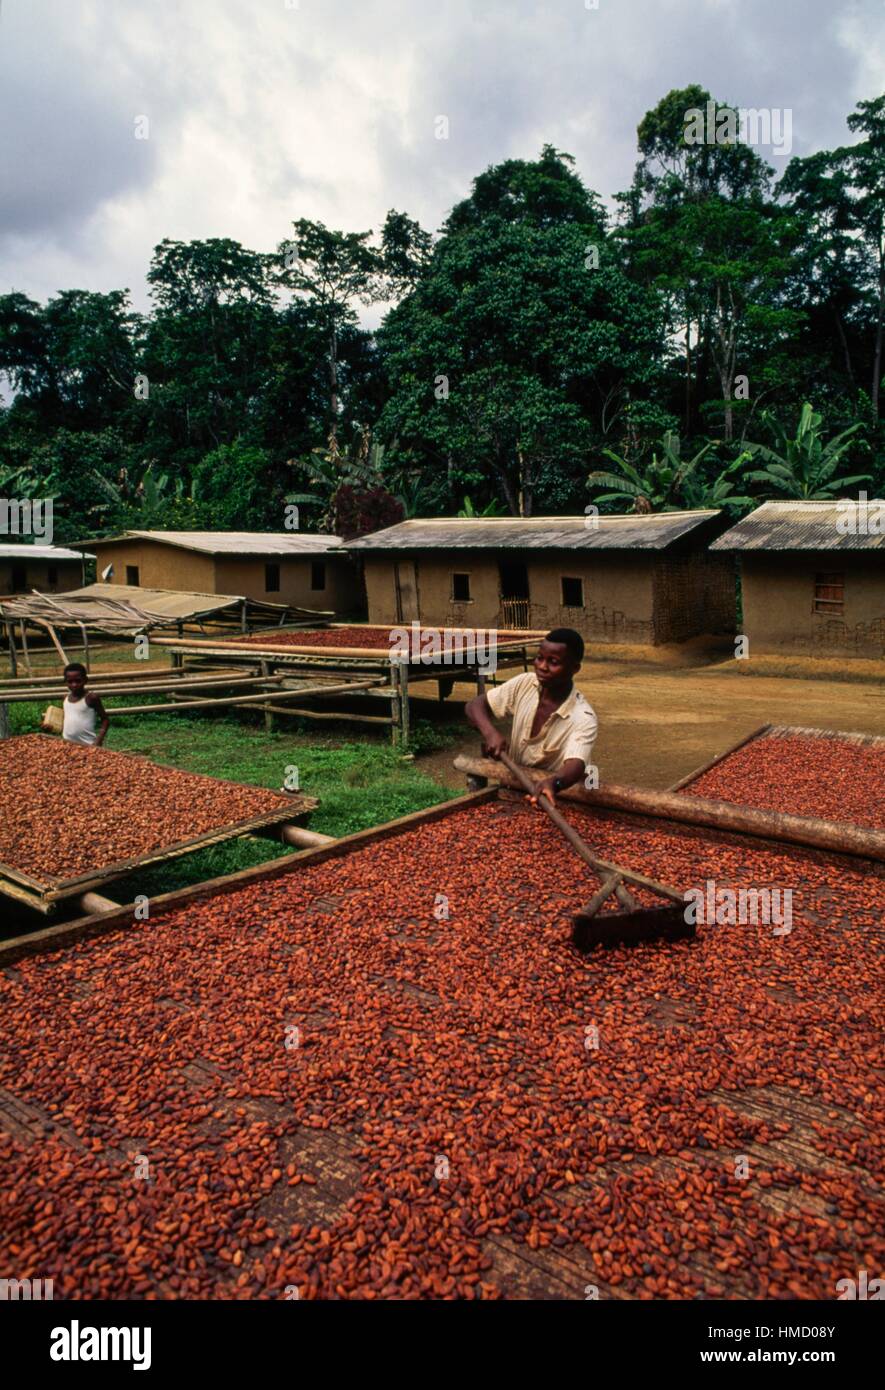 La transformation d'un homme de cacao sec, près d'Ebolowa, Cameroun. Banque D'Images